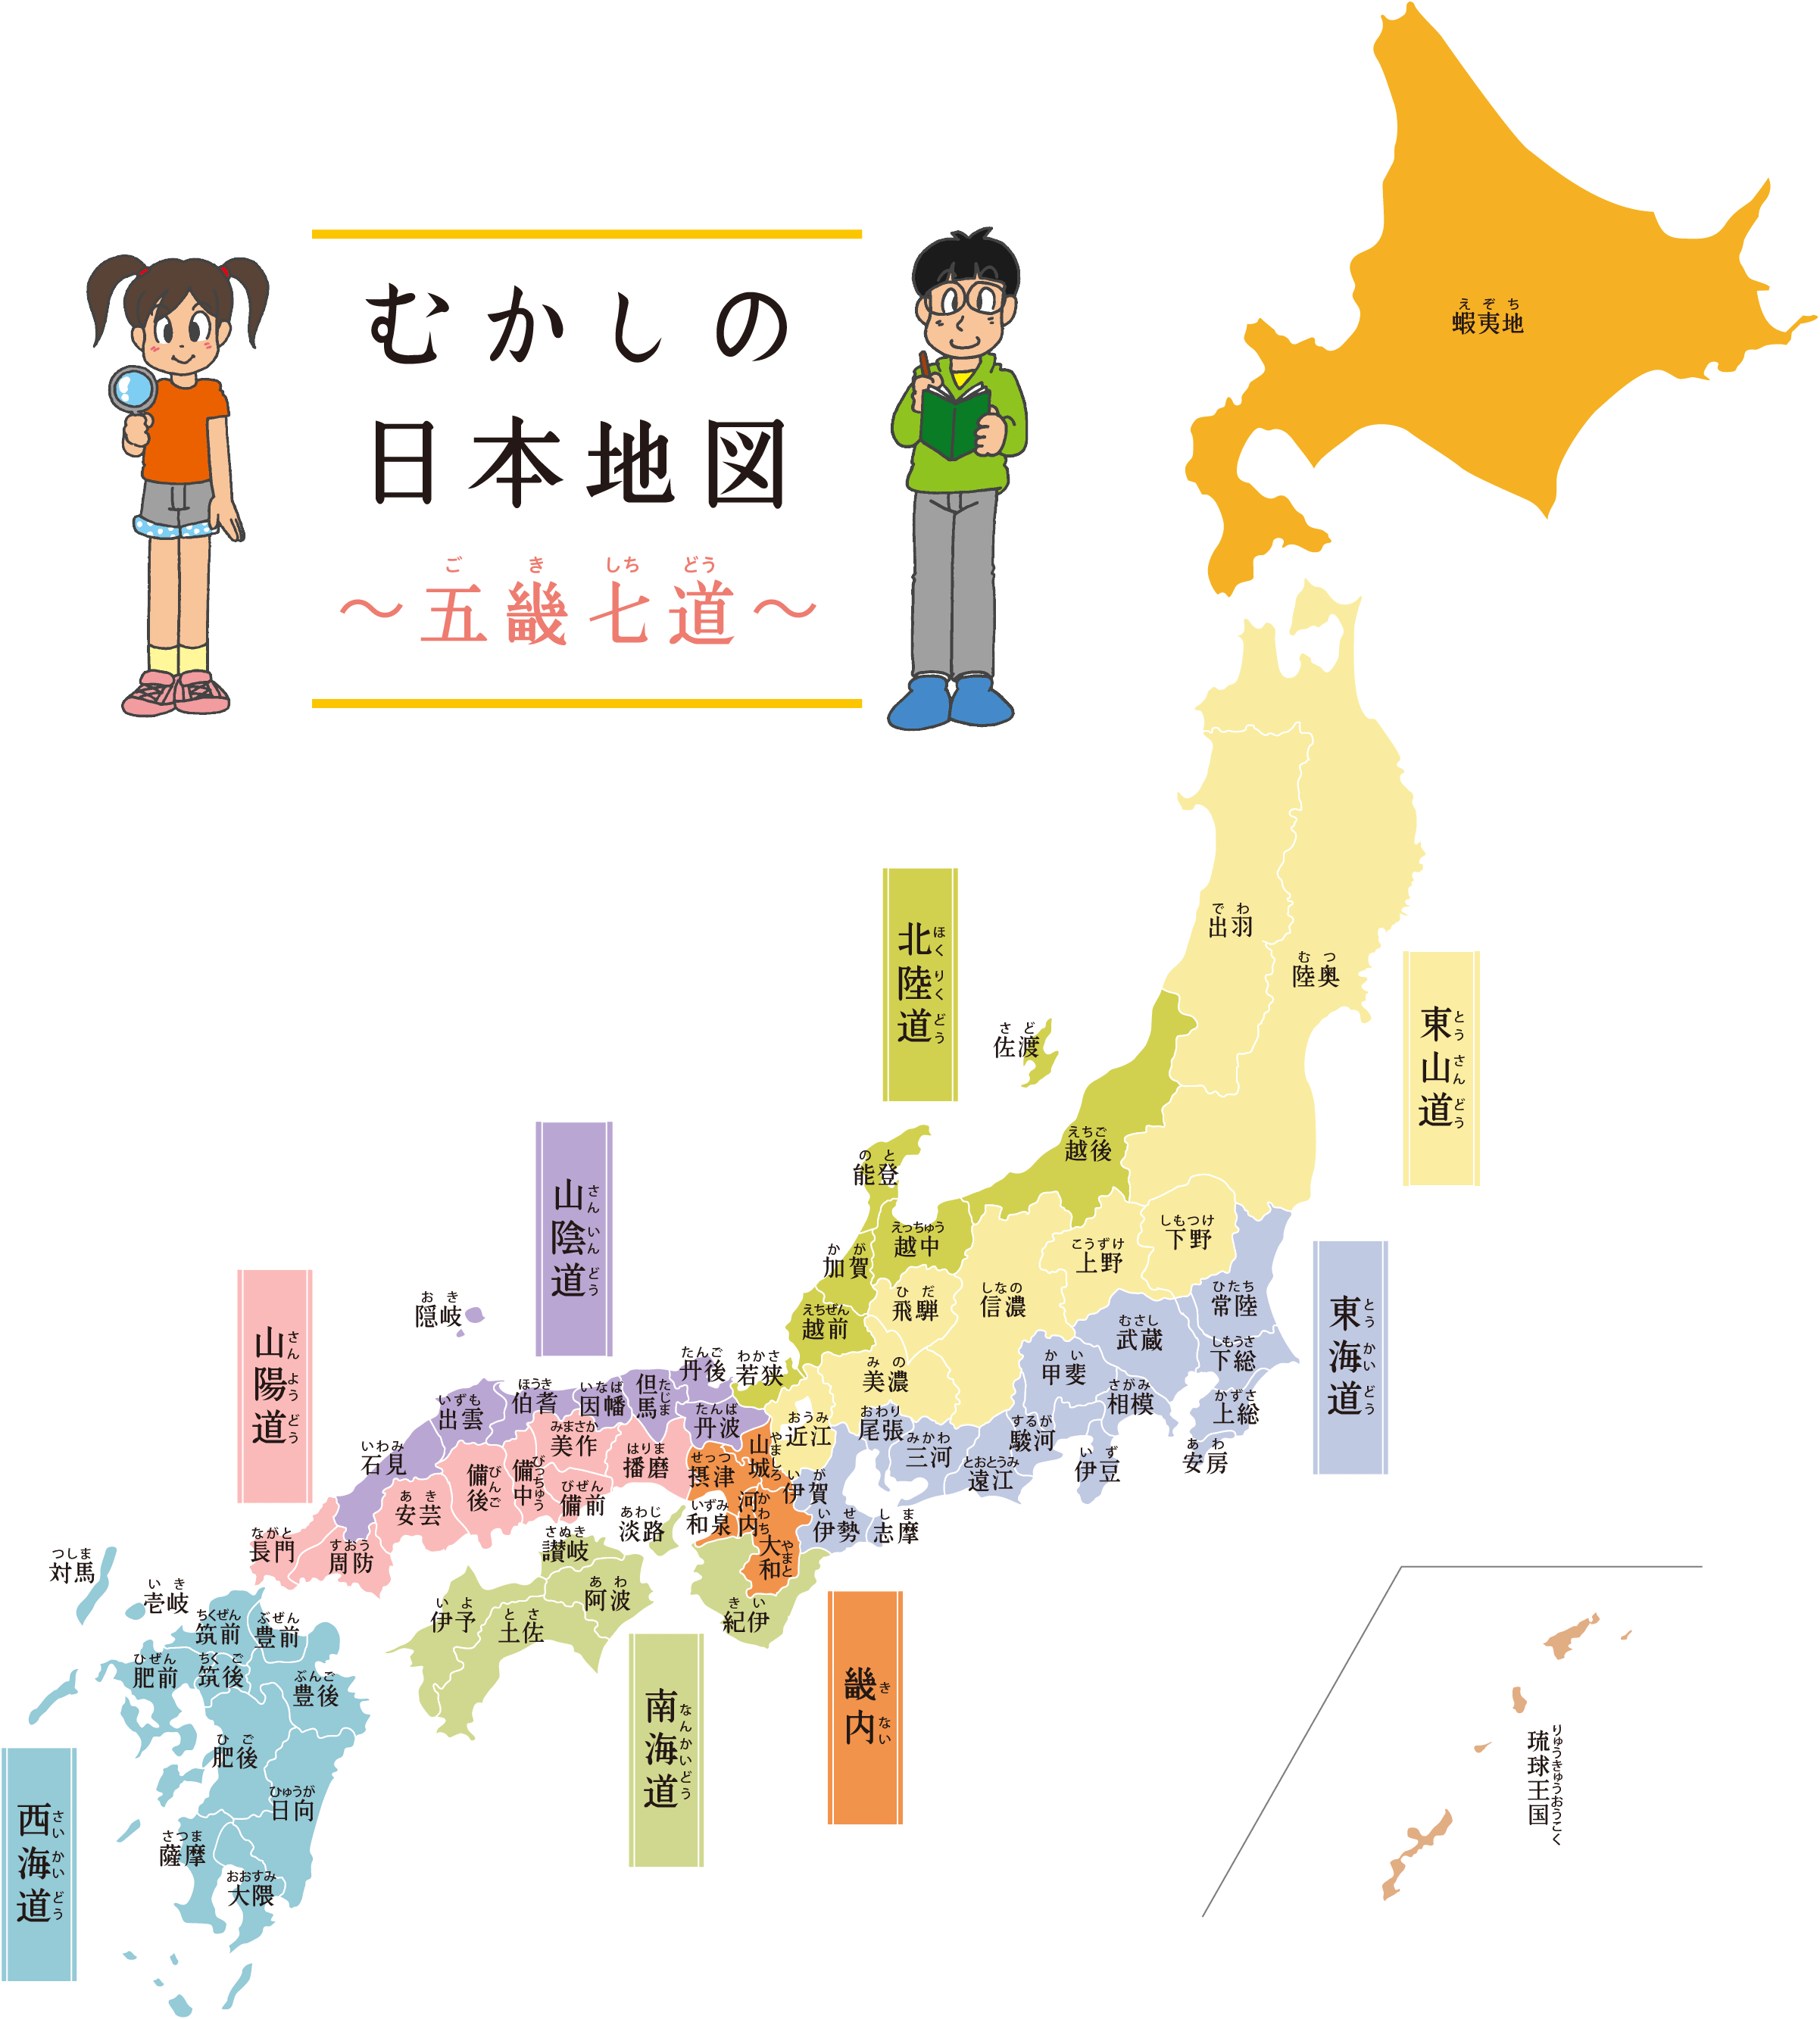 昔の日本地図 五畿七道